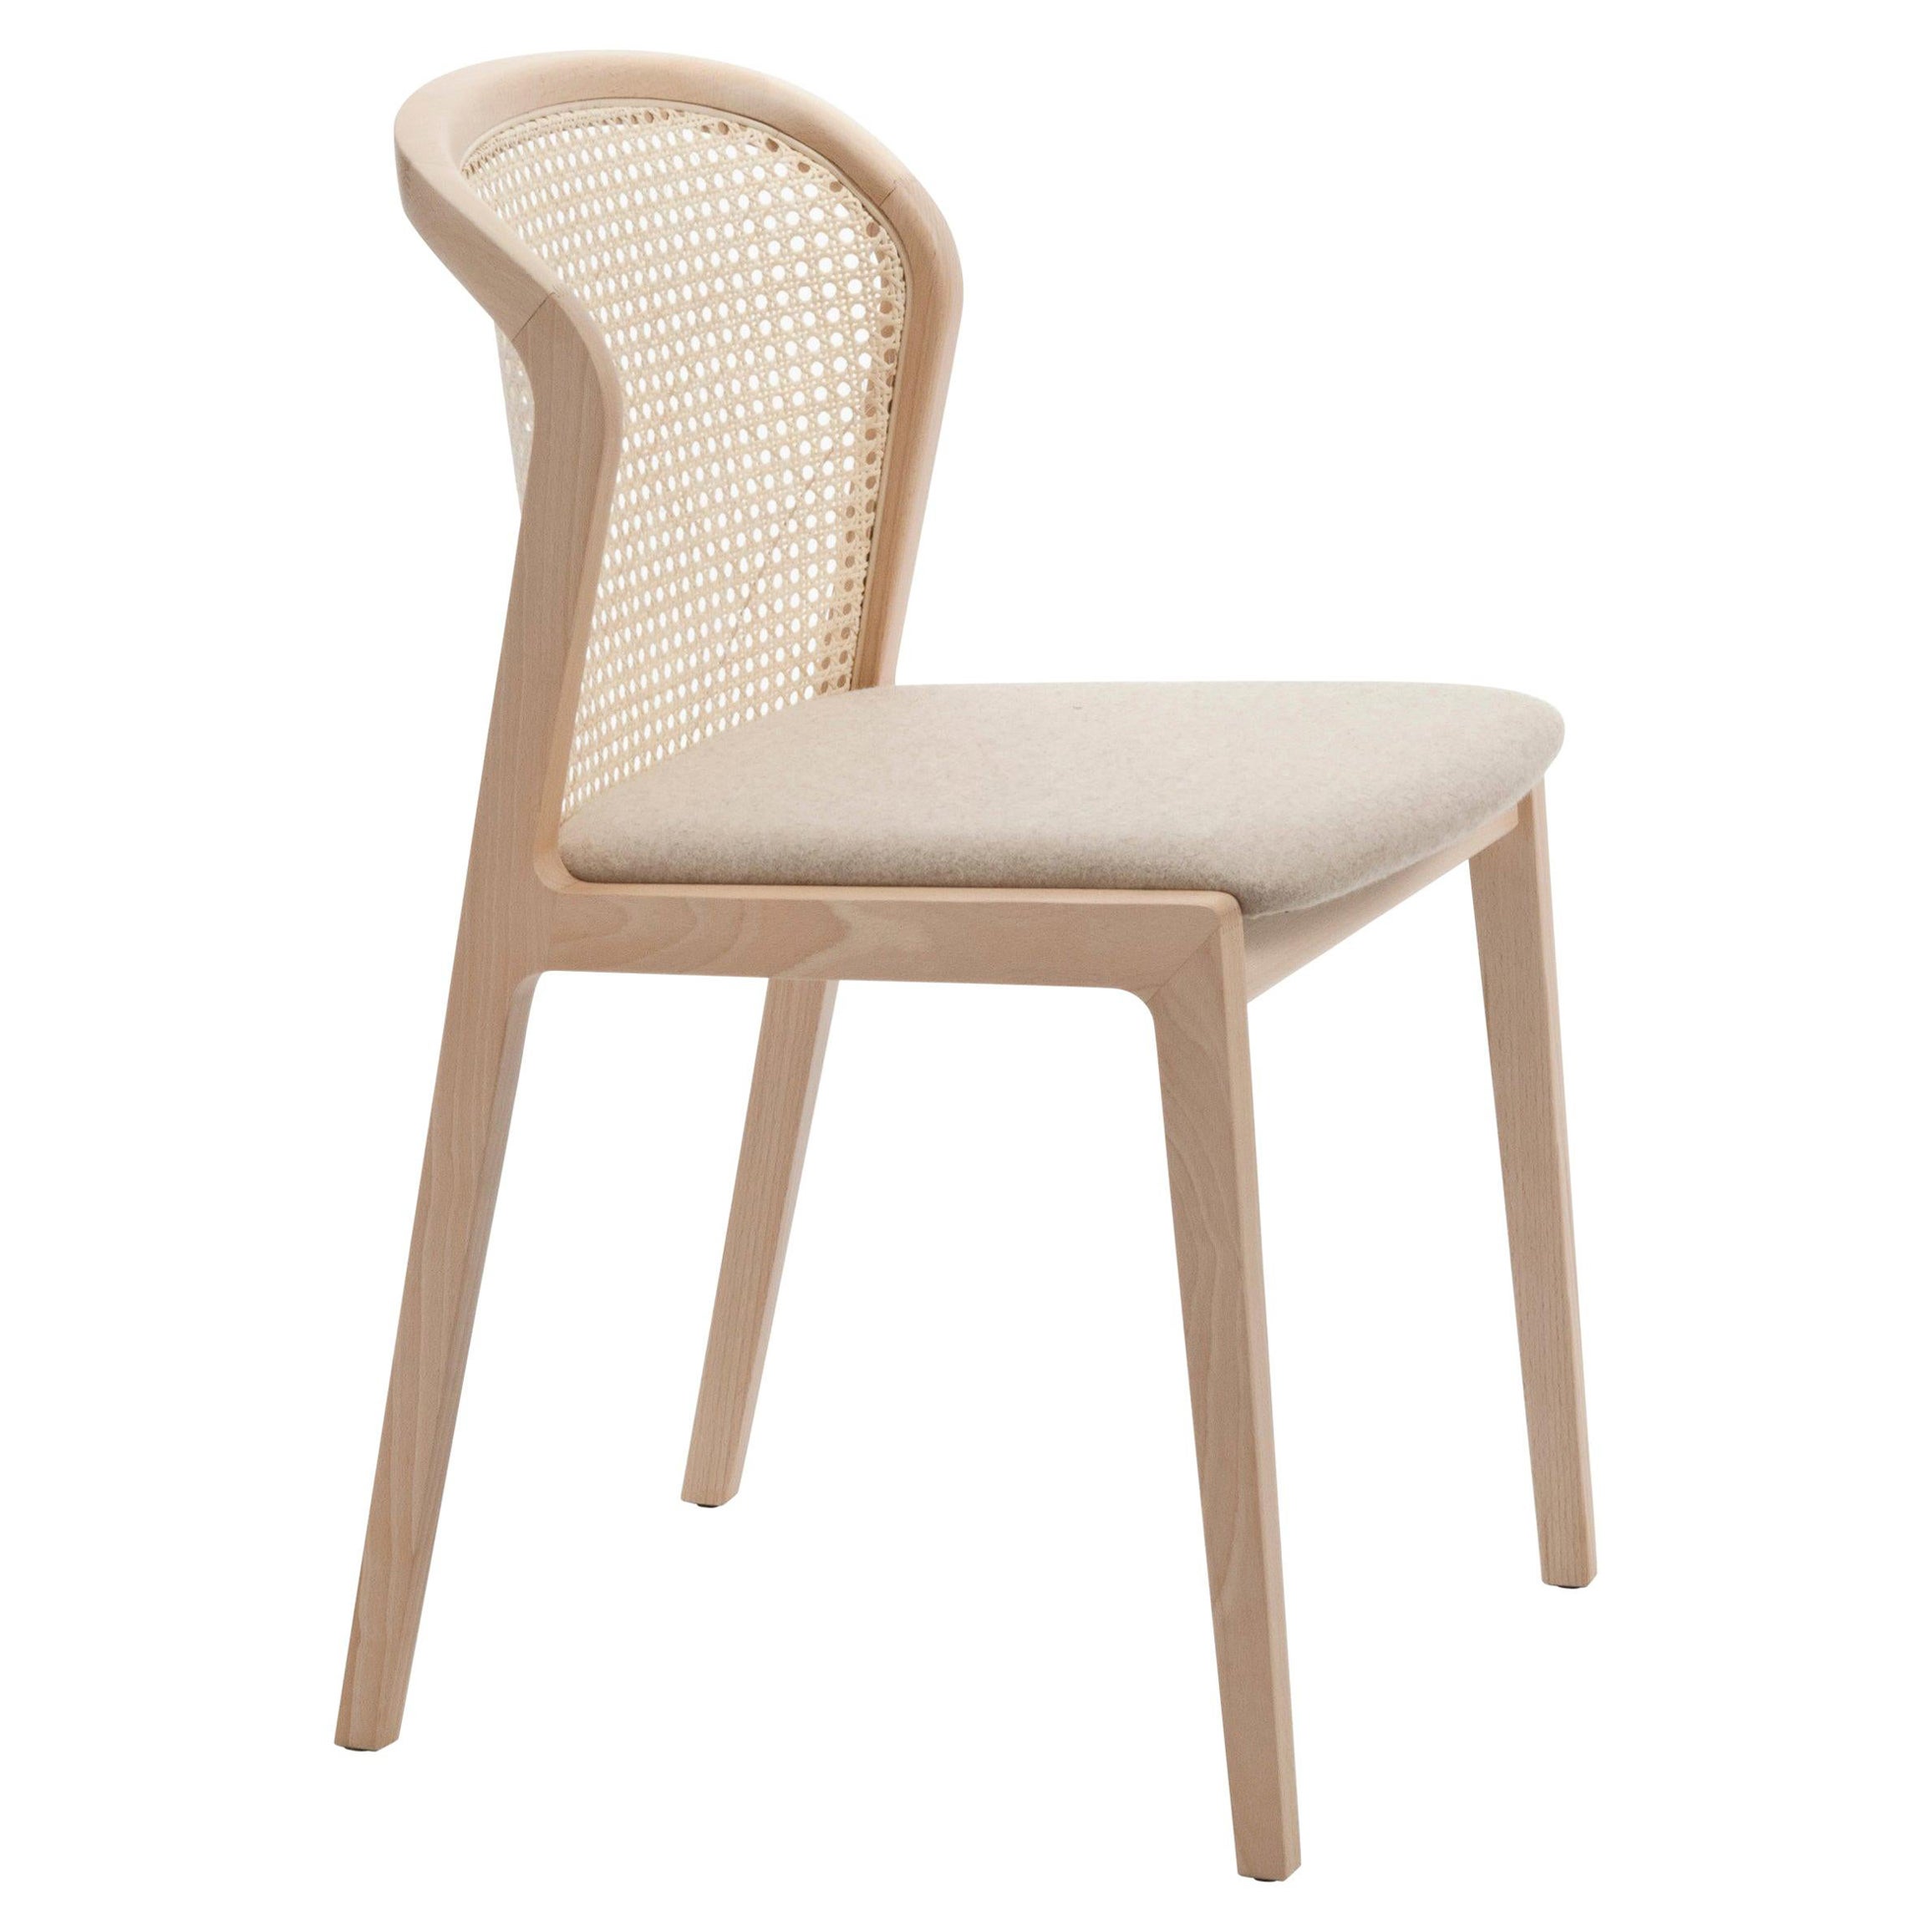 Satz von 6 neuen Stühlen. Vienna ist ein außergewöhnlich komfortabler und eleganter Stuhl, der von dem französischen Designer Emmanuel Gallina entworfen wurde, der gerne Brancusi zitiert, wenn er sagt, dass 